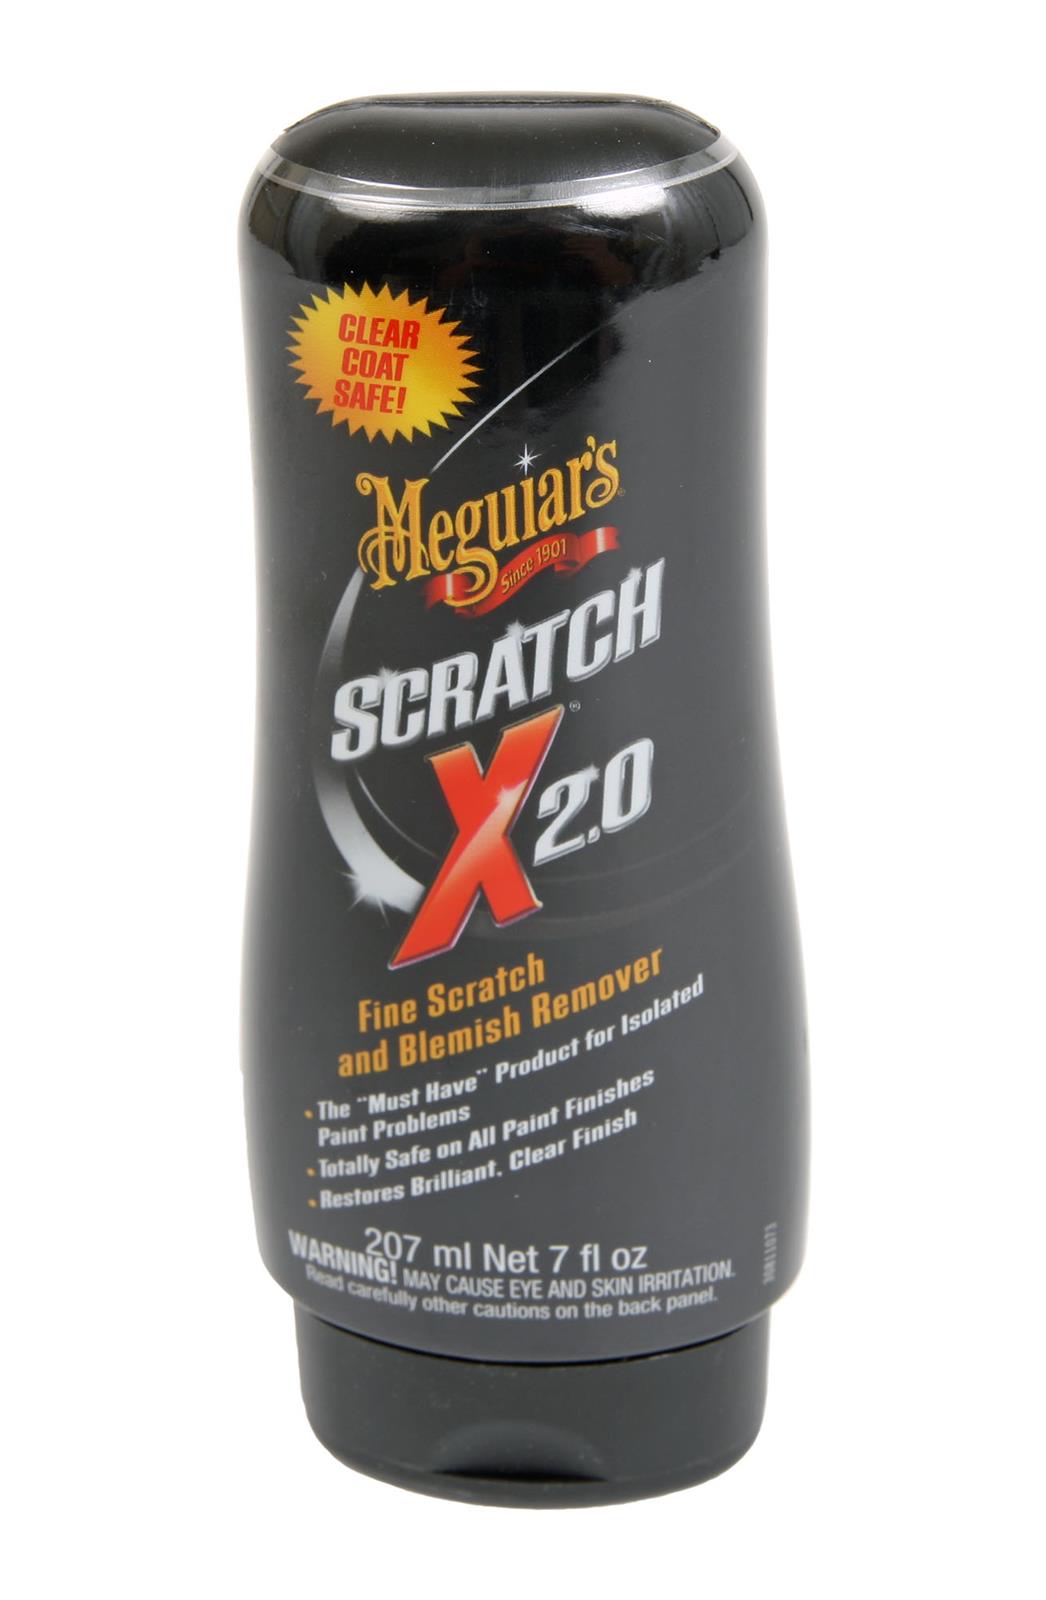 Scratch-X 2.0 - 207 ml - Meguiar's car care product